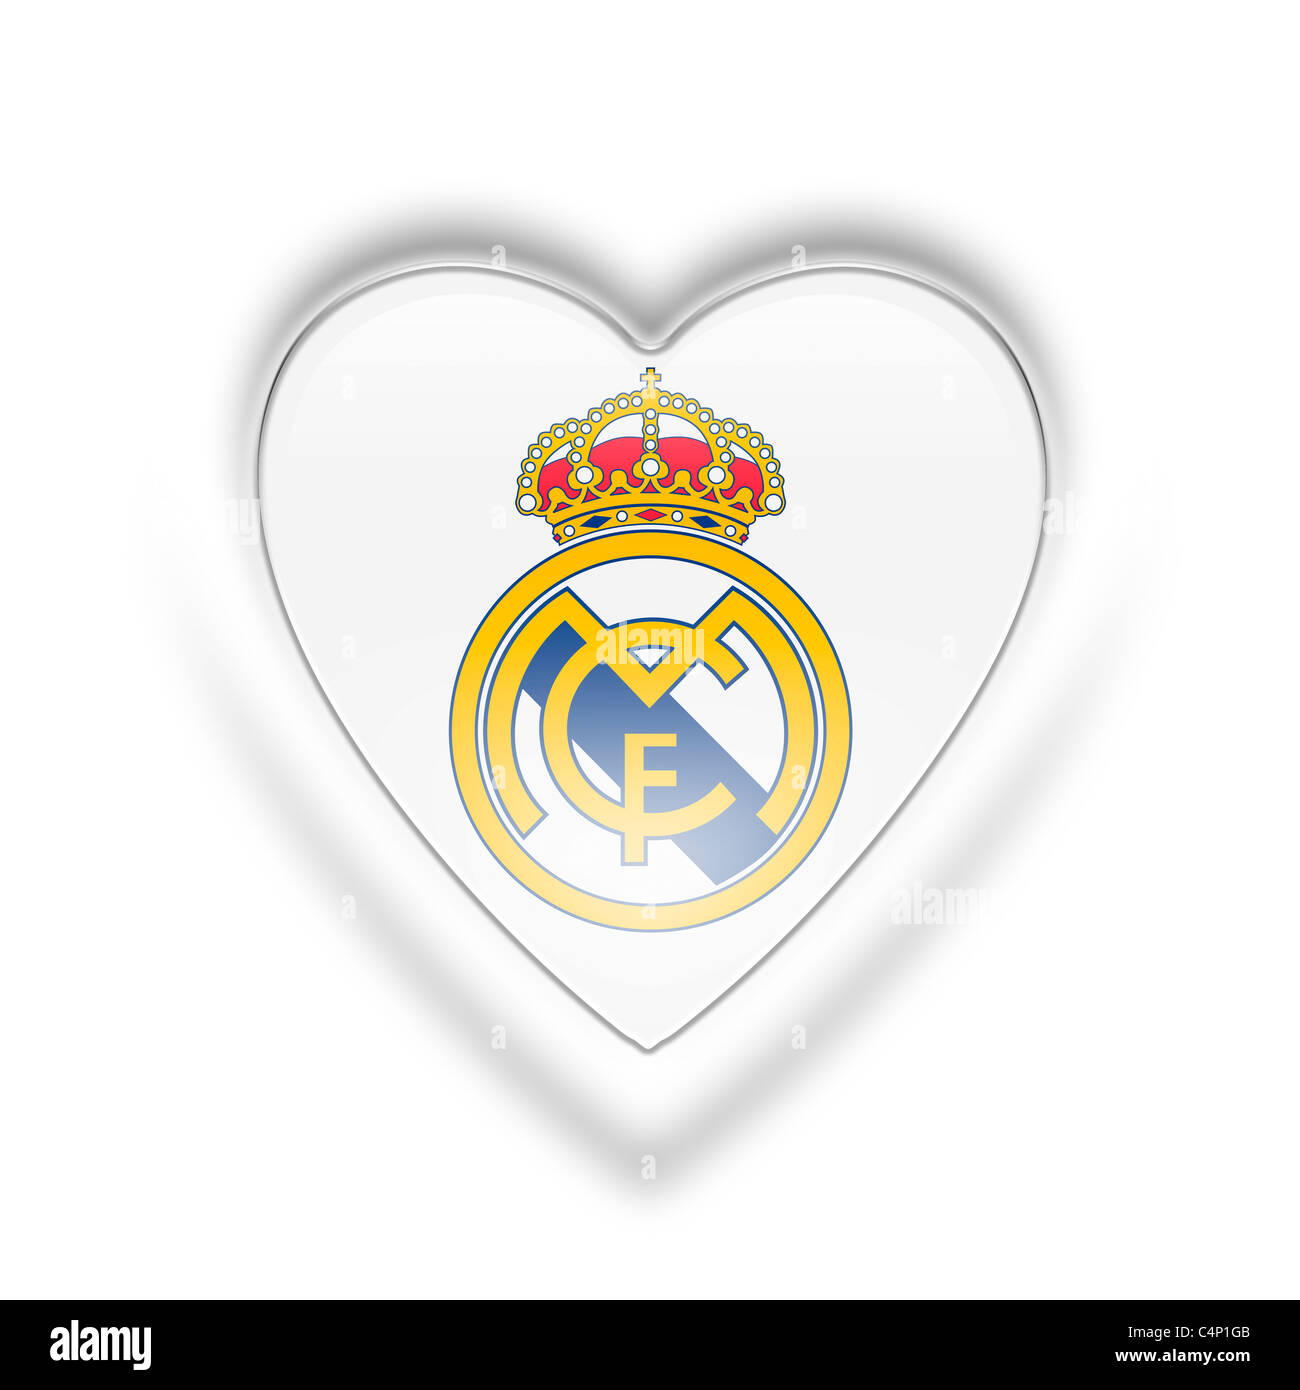 Camisetas del Real Madrid para corazones blancos